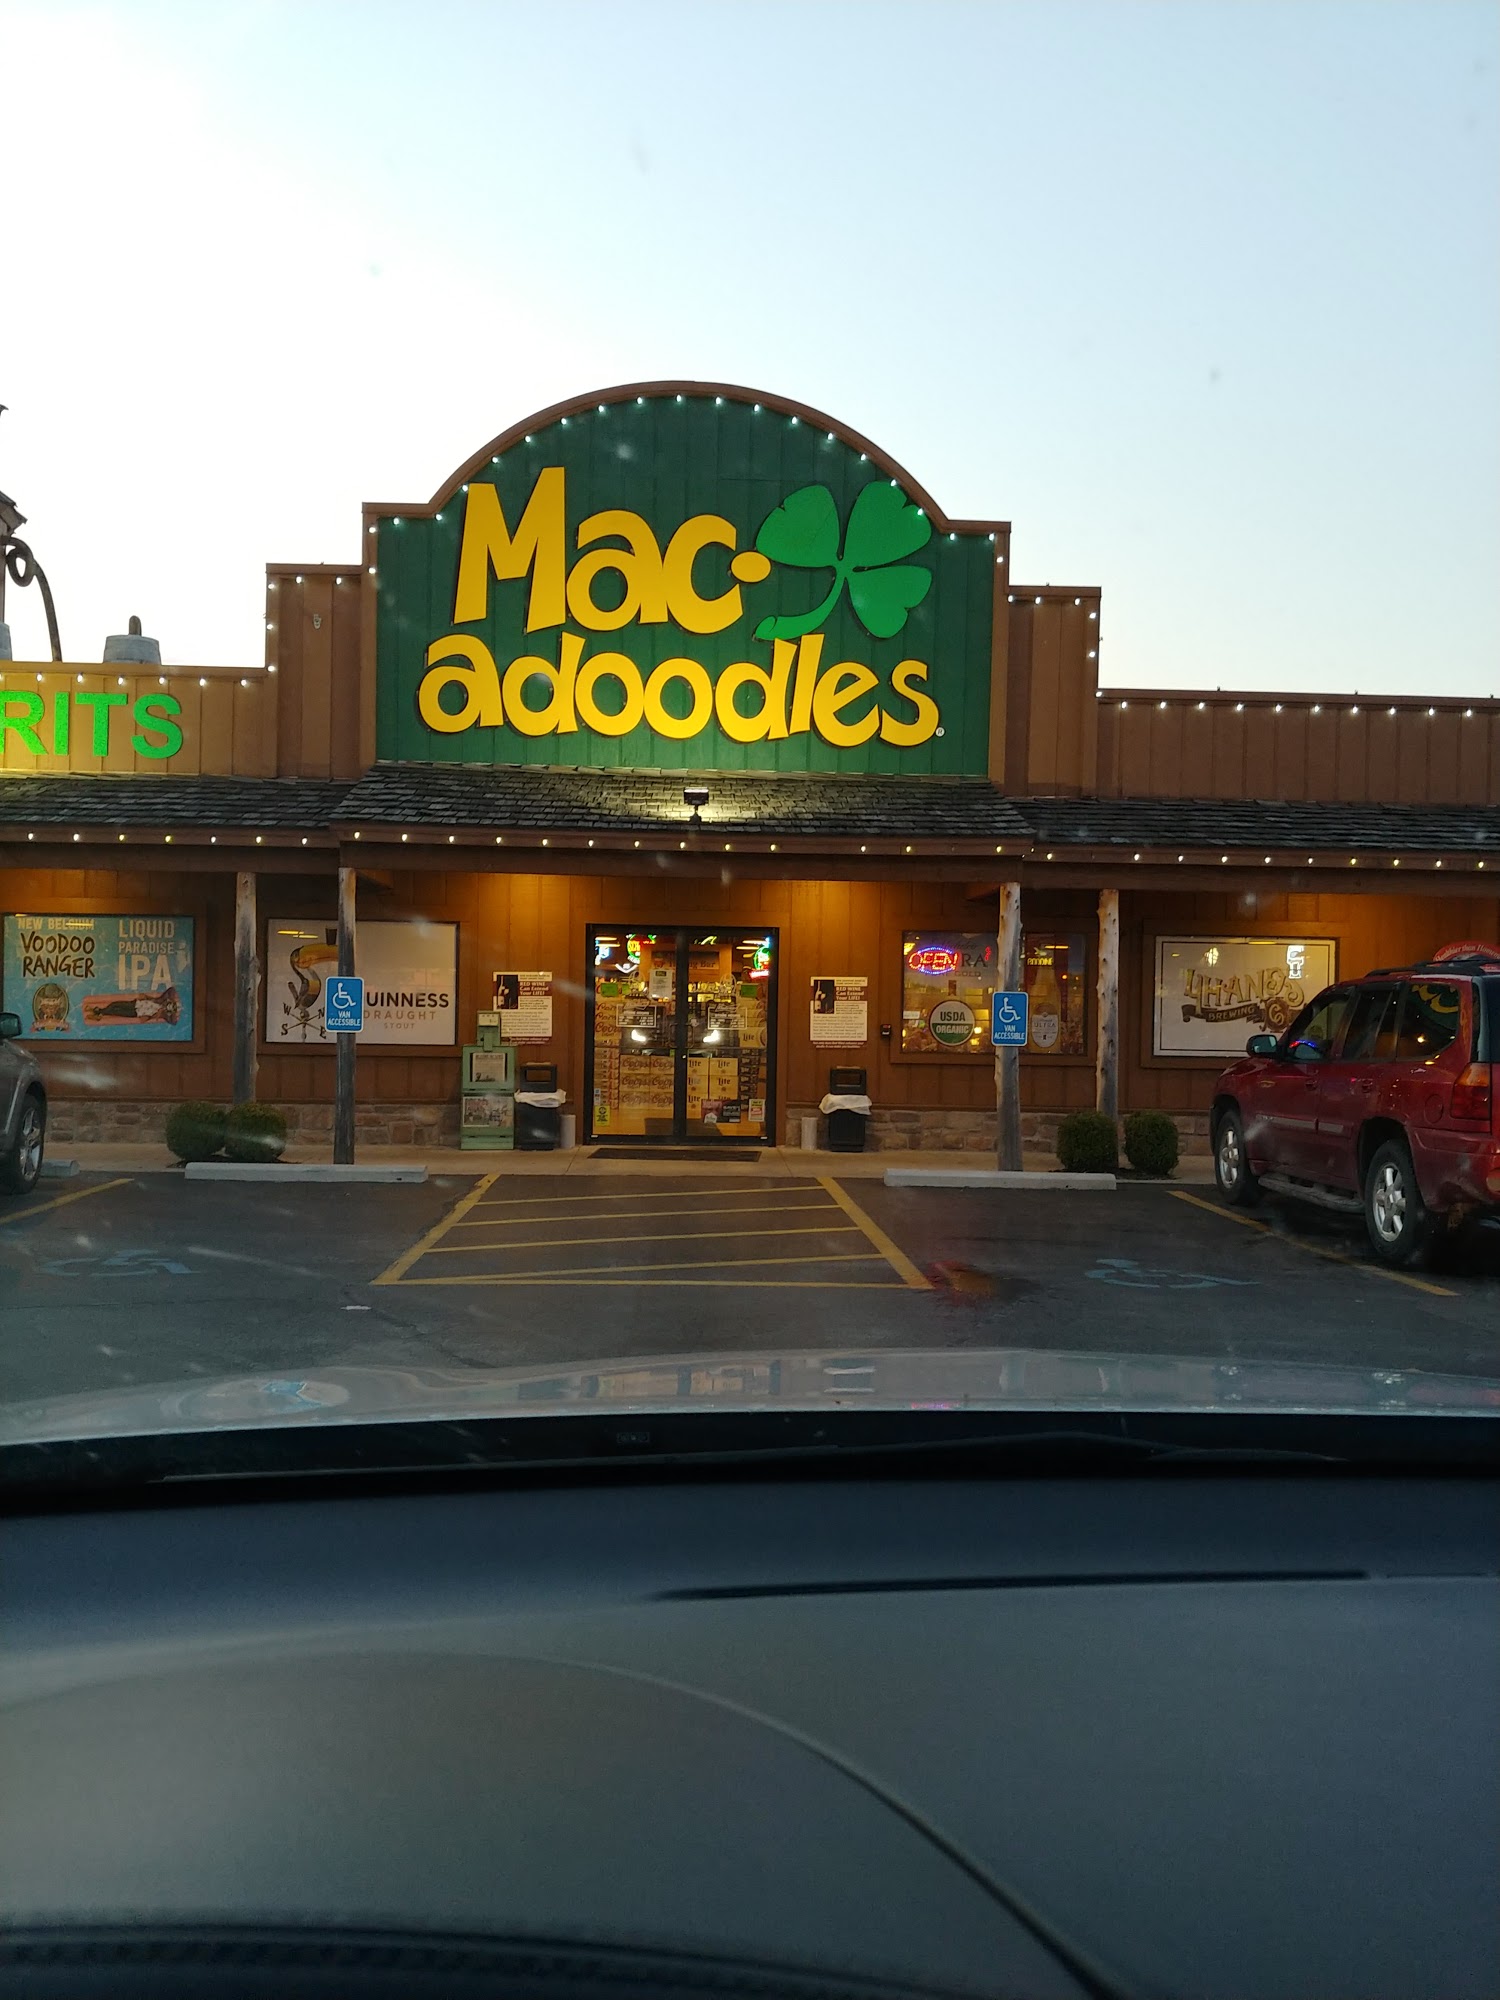 Macadoodles